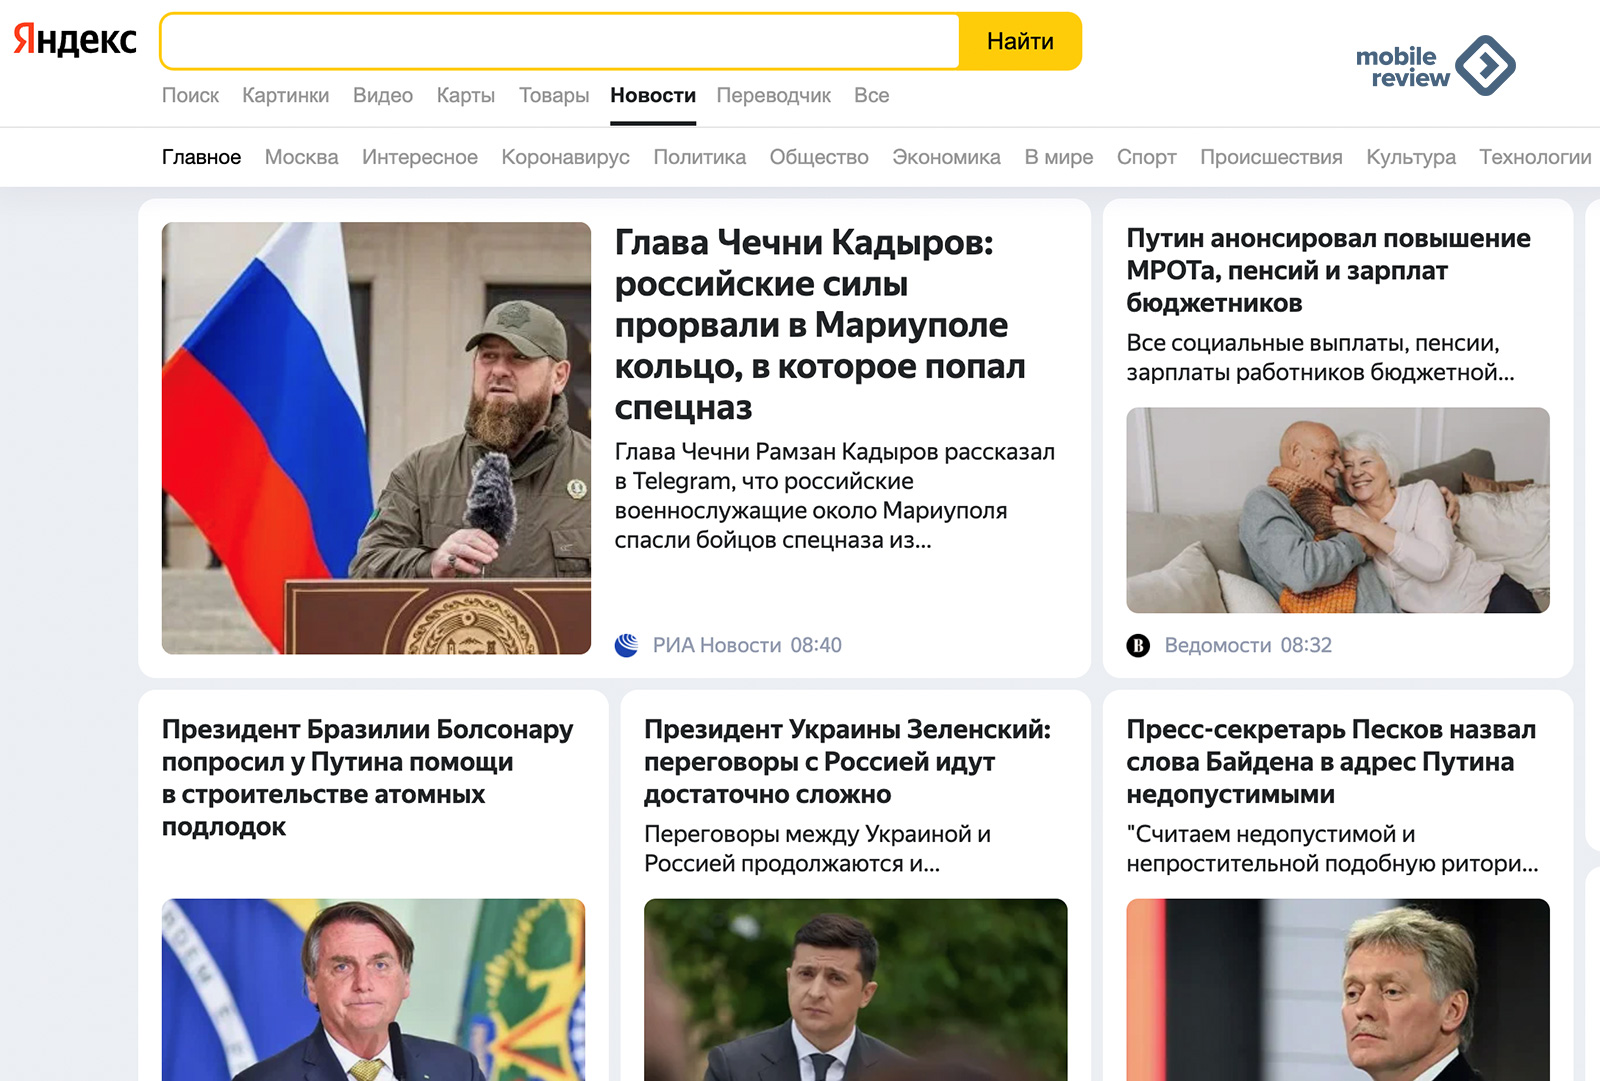 «Яндекс» в свободном падении. Поспешный уход с западных рынков